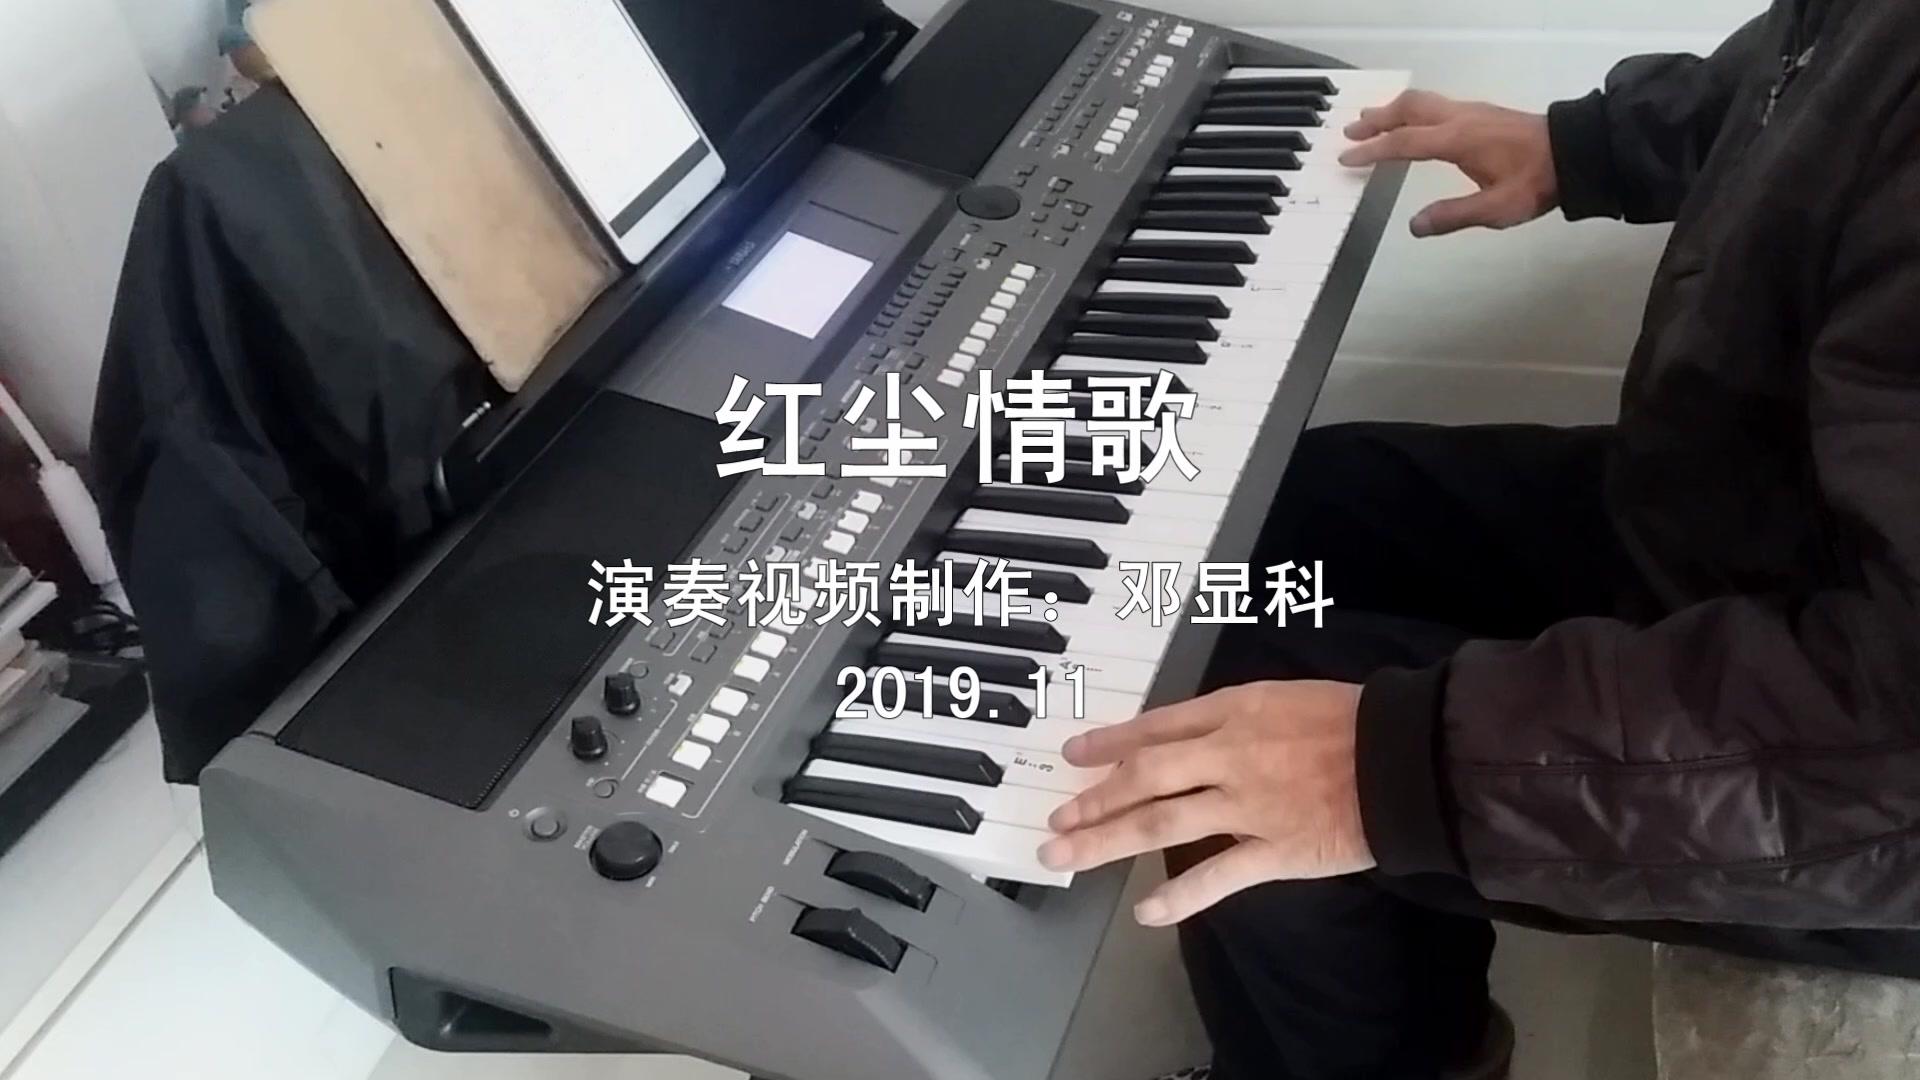 60老头自学电子琴一年1首抒情曲《红尘情歌》分享与你#电子琴演奏